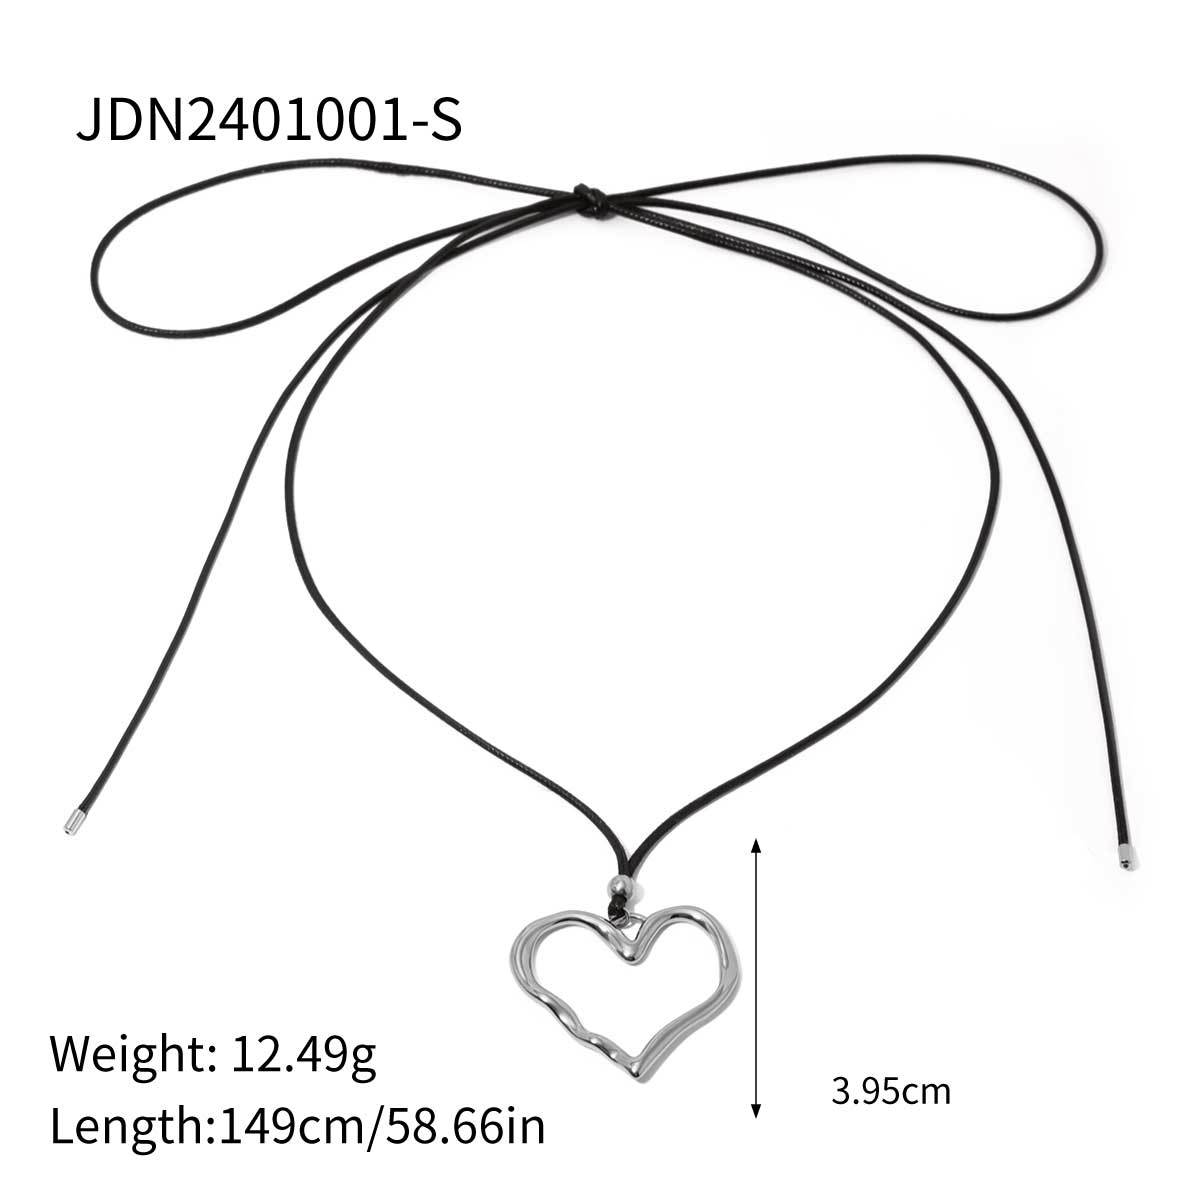 2:JDN2401001-S